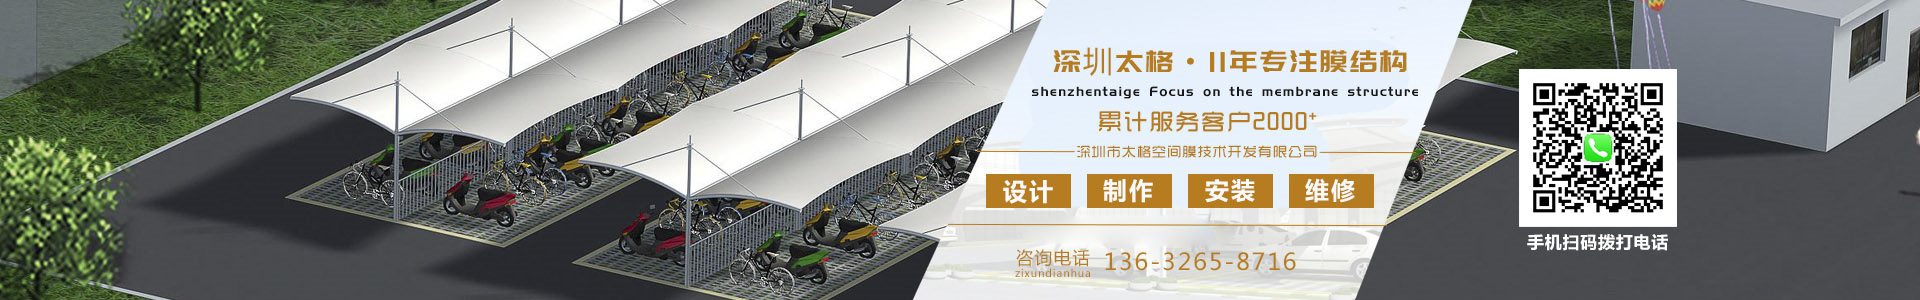 膜结构车棚报价-膜结构建筑-张拉膜结构工程公司 - 深圳市快盈ll